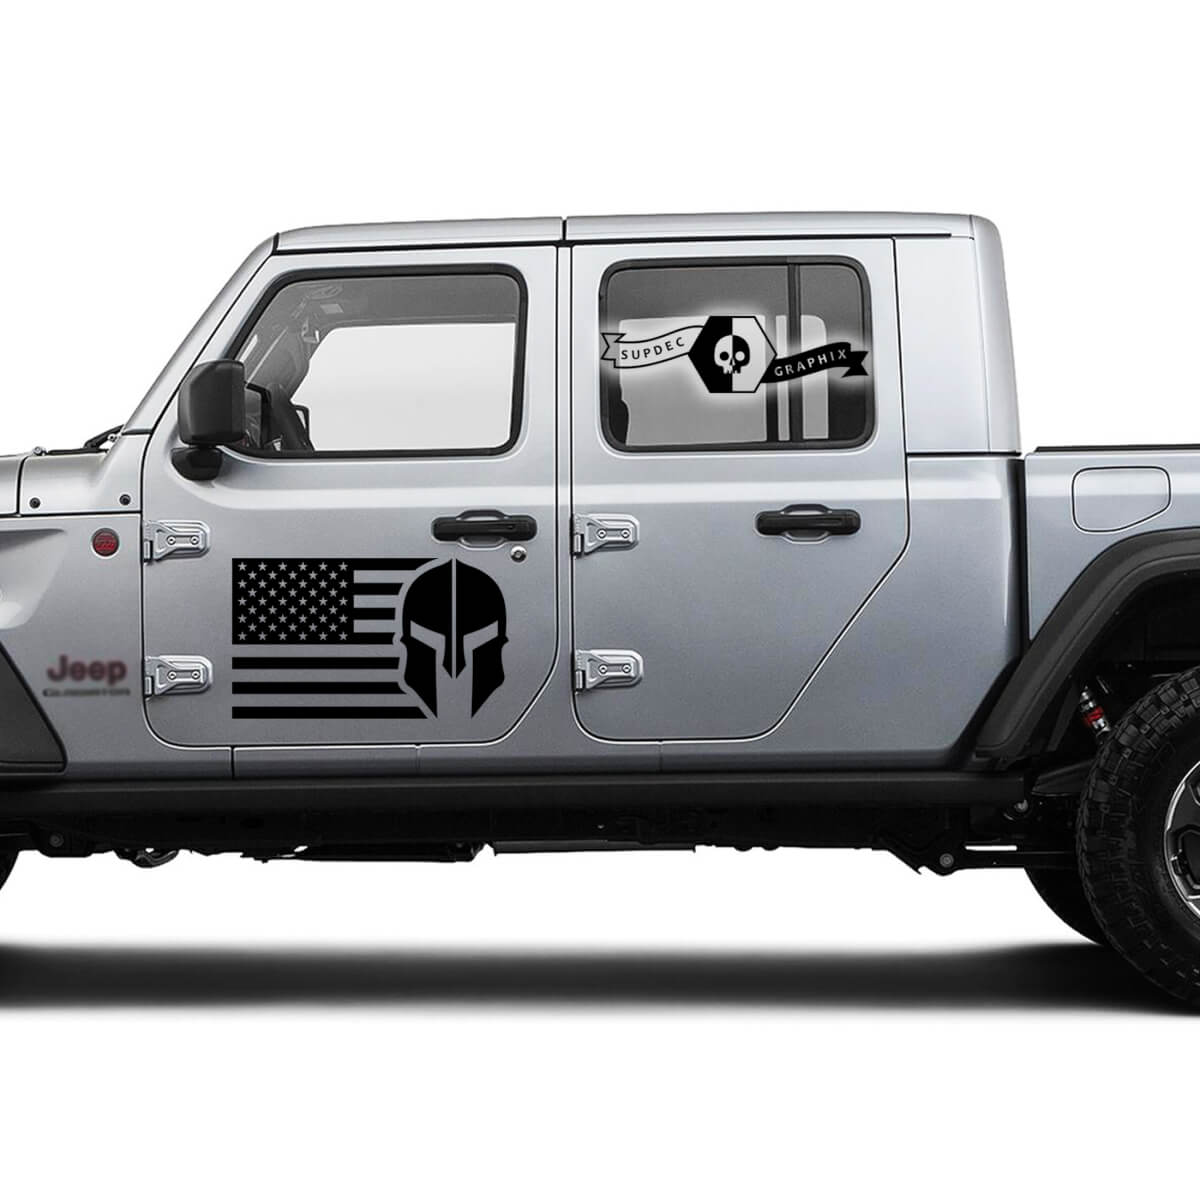 Coppia Jeep Gladiator USA Flag porta gladiatore logo in vinile adesivo per la decalcomania grafica